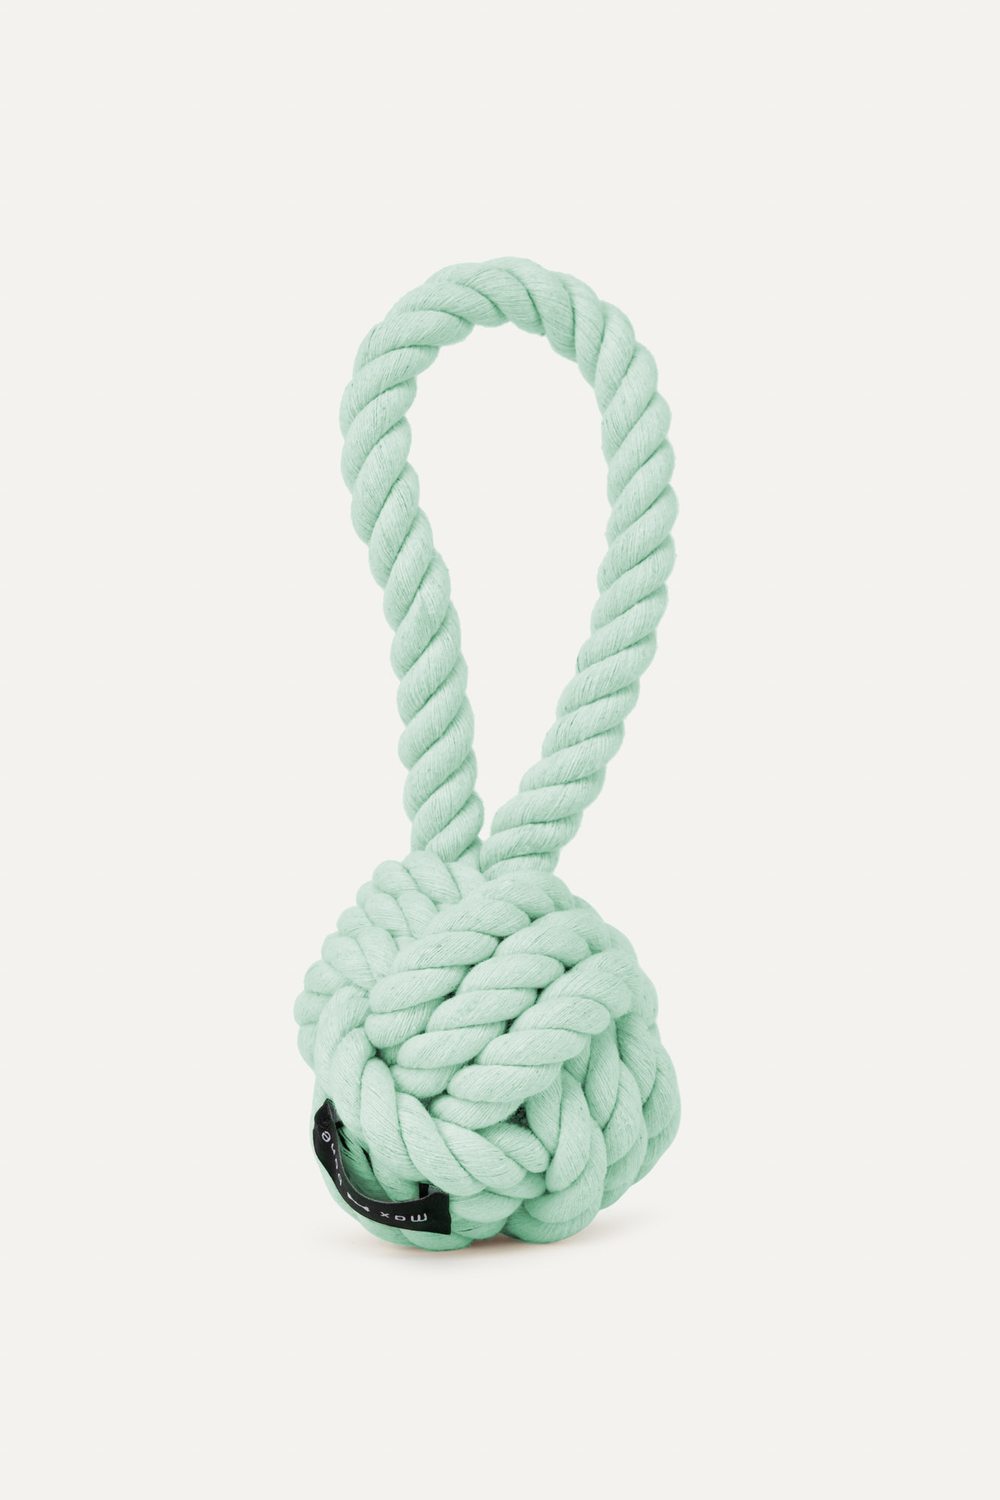 Rope Dog Toy - Sage